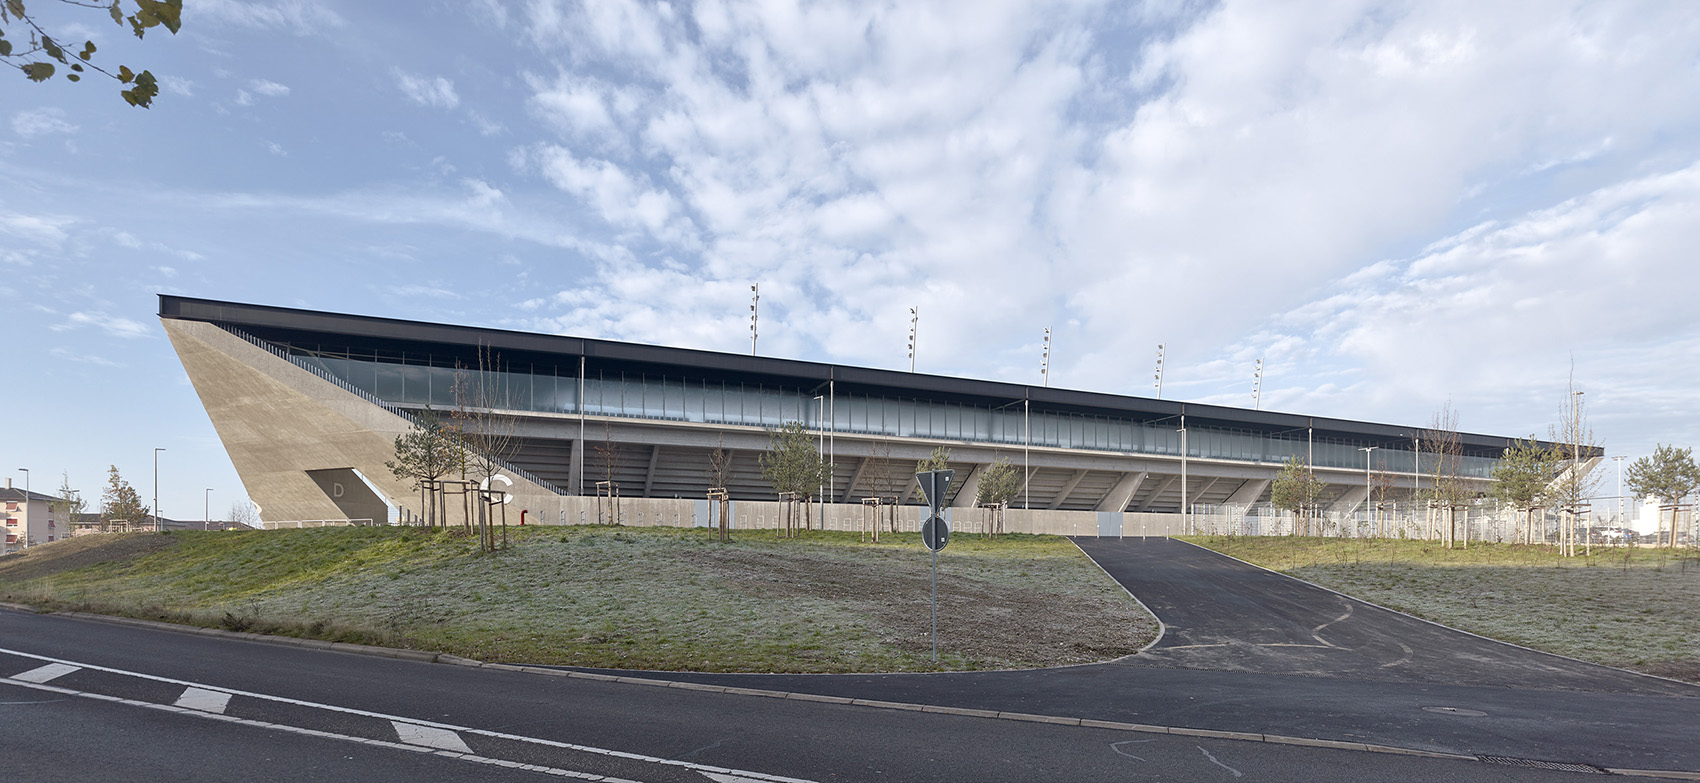 洛桑市新足球场馆，瑞士/散发宁静感的市郊体育设施-68